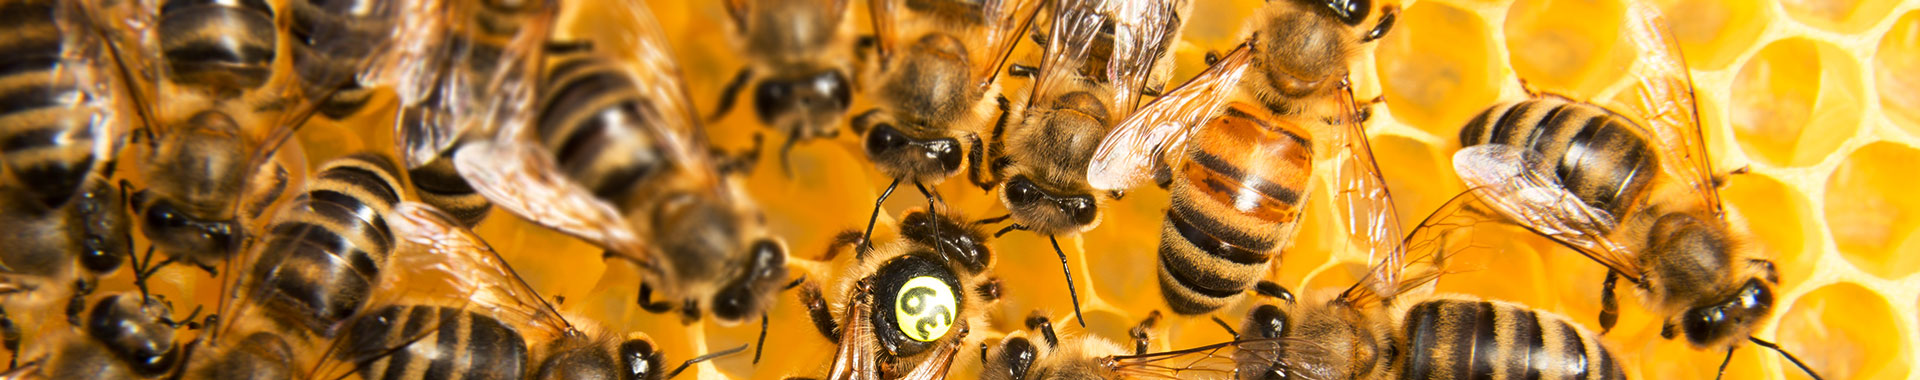 Bienen auf einer Bienenwabe 